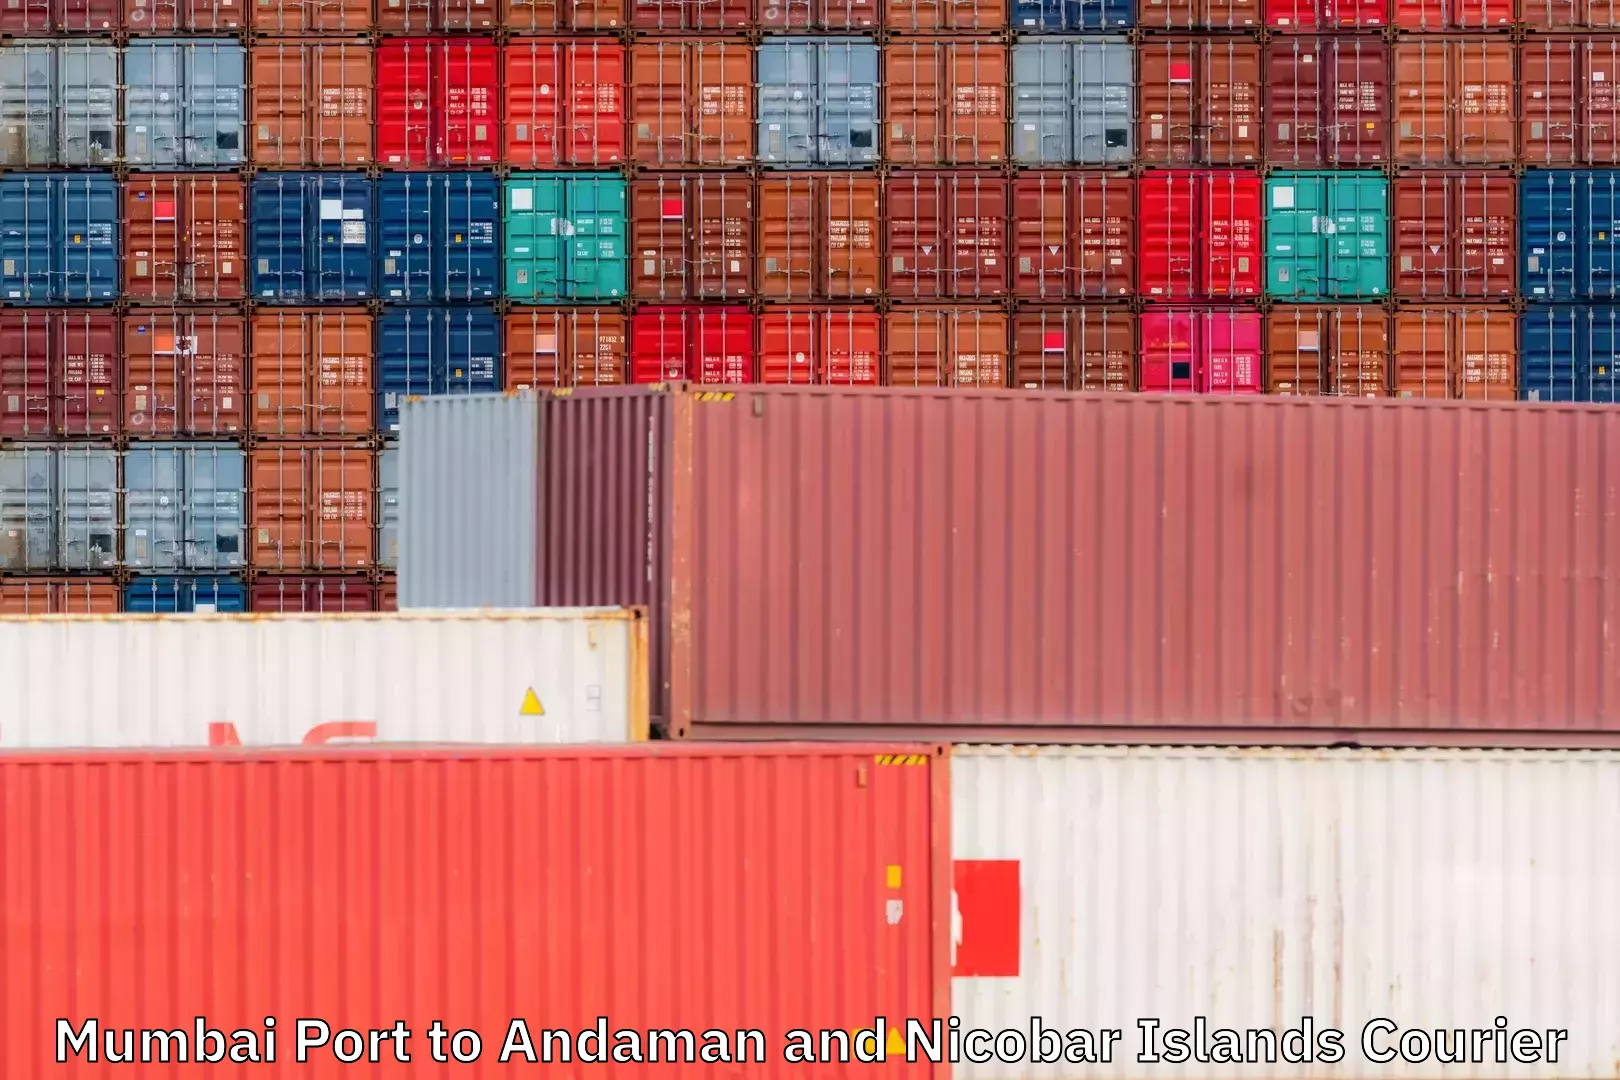 High-efficiency logistics Mumbai Port to Andaman and Nicobar Islands